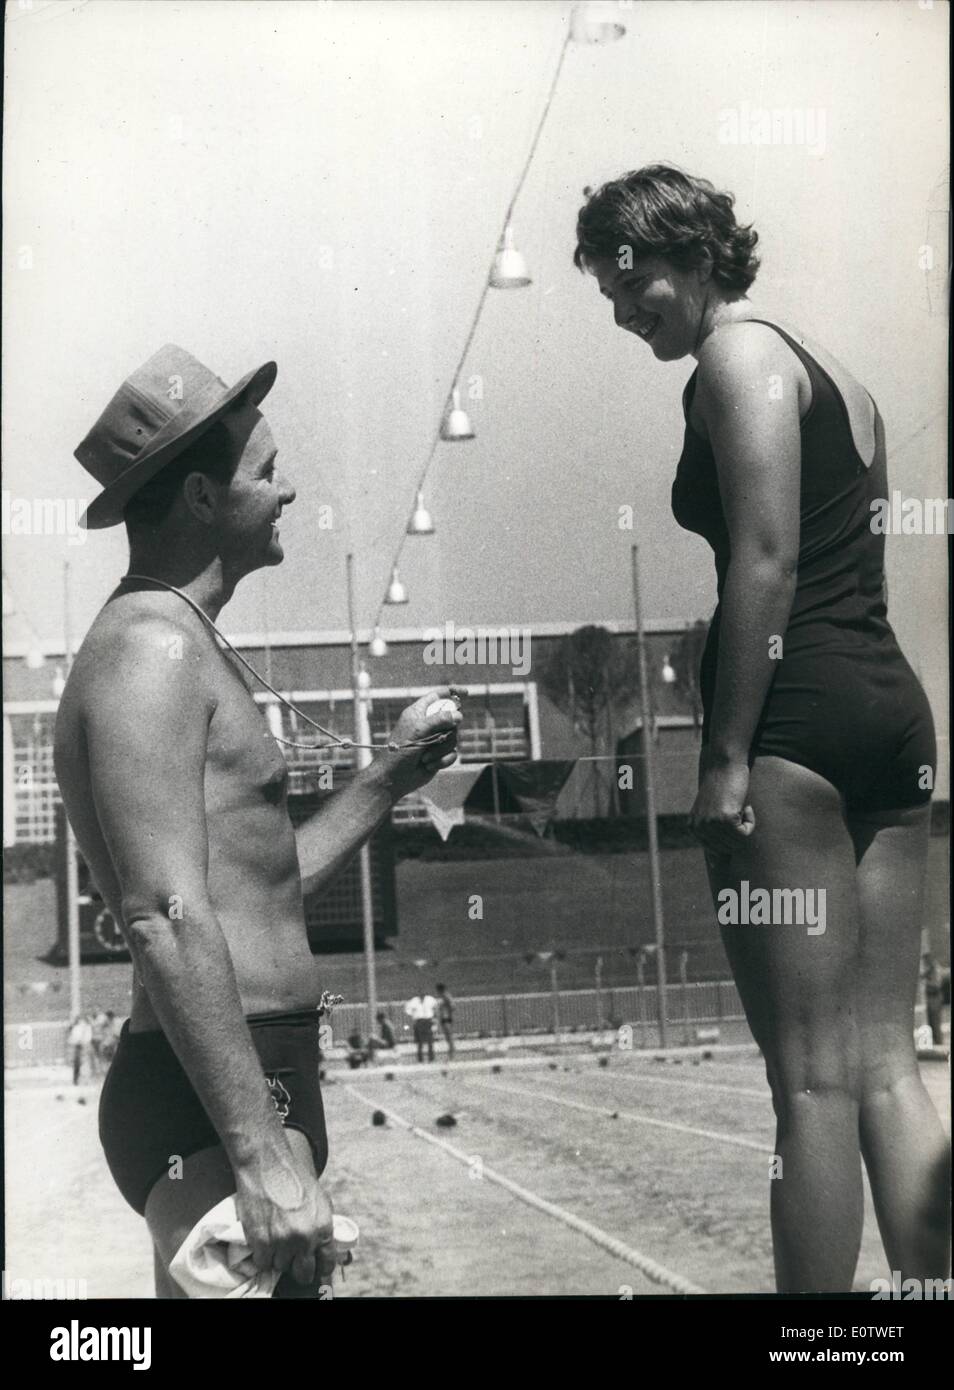 08 août, 1960 - L'aube des Jeux olympiques de trains Fraster : nageur olympique Australienne Dawn Frasser, reçoit des instructions de son manager, tandis que la formation à la piscine olympique à Rome hier. Banque D'Images